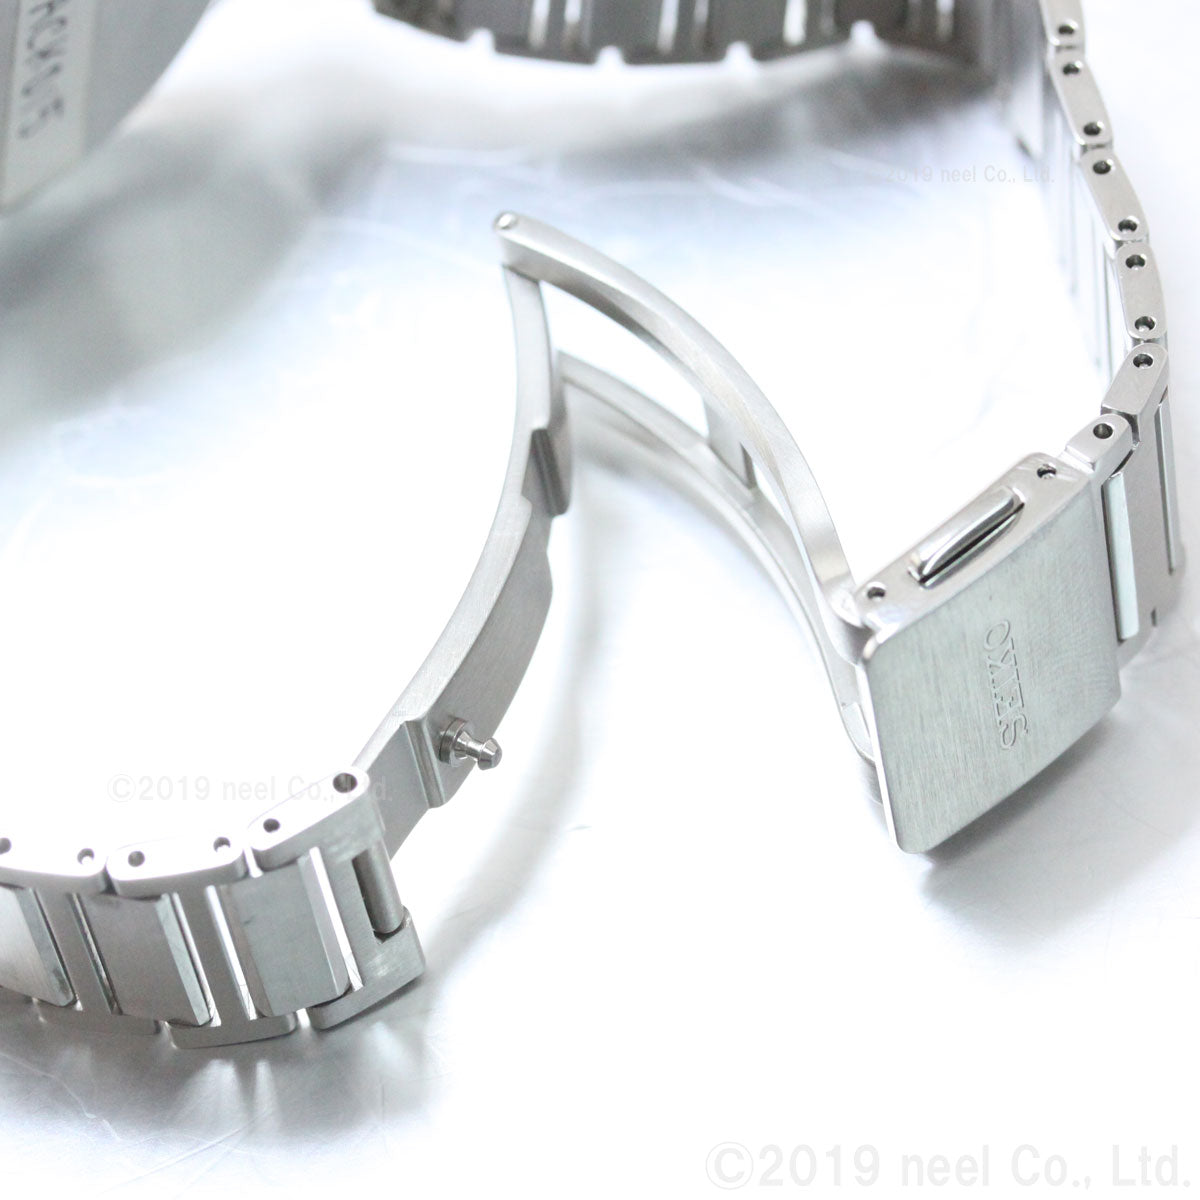 セイコー ドルチェ＆エクセリーヌ SEIKO DOLCE＆EXCELINE 腕時計 メンズ レディース ペアモデル SACK015 SWDL147